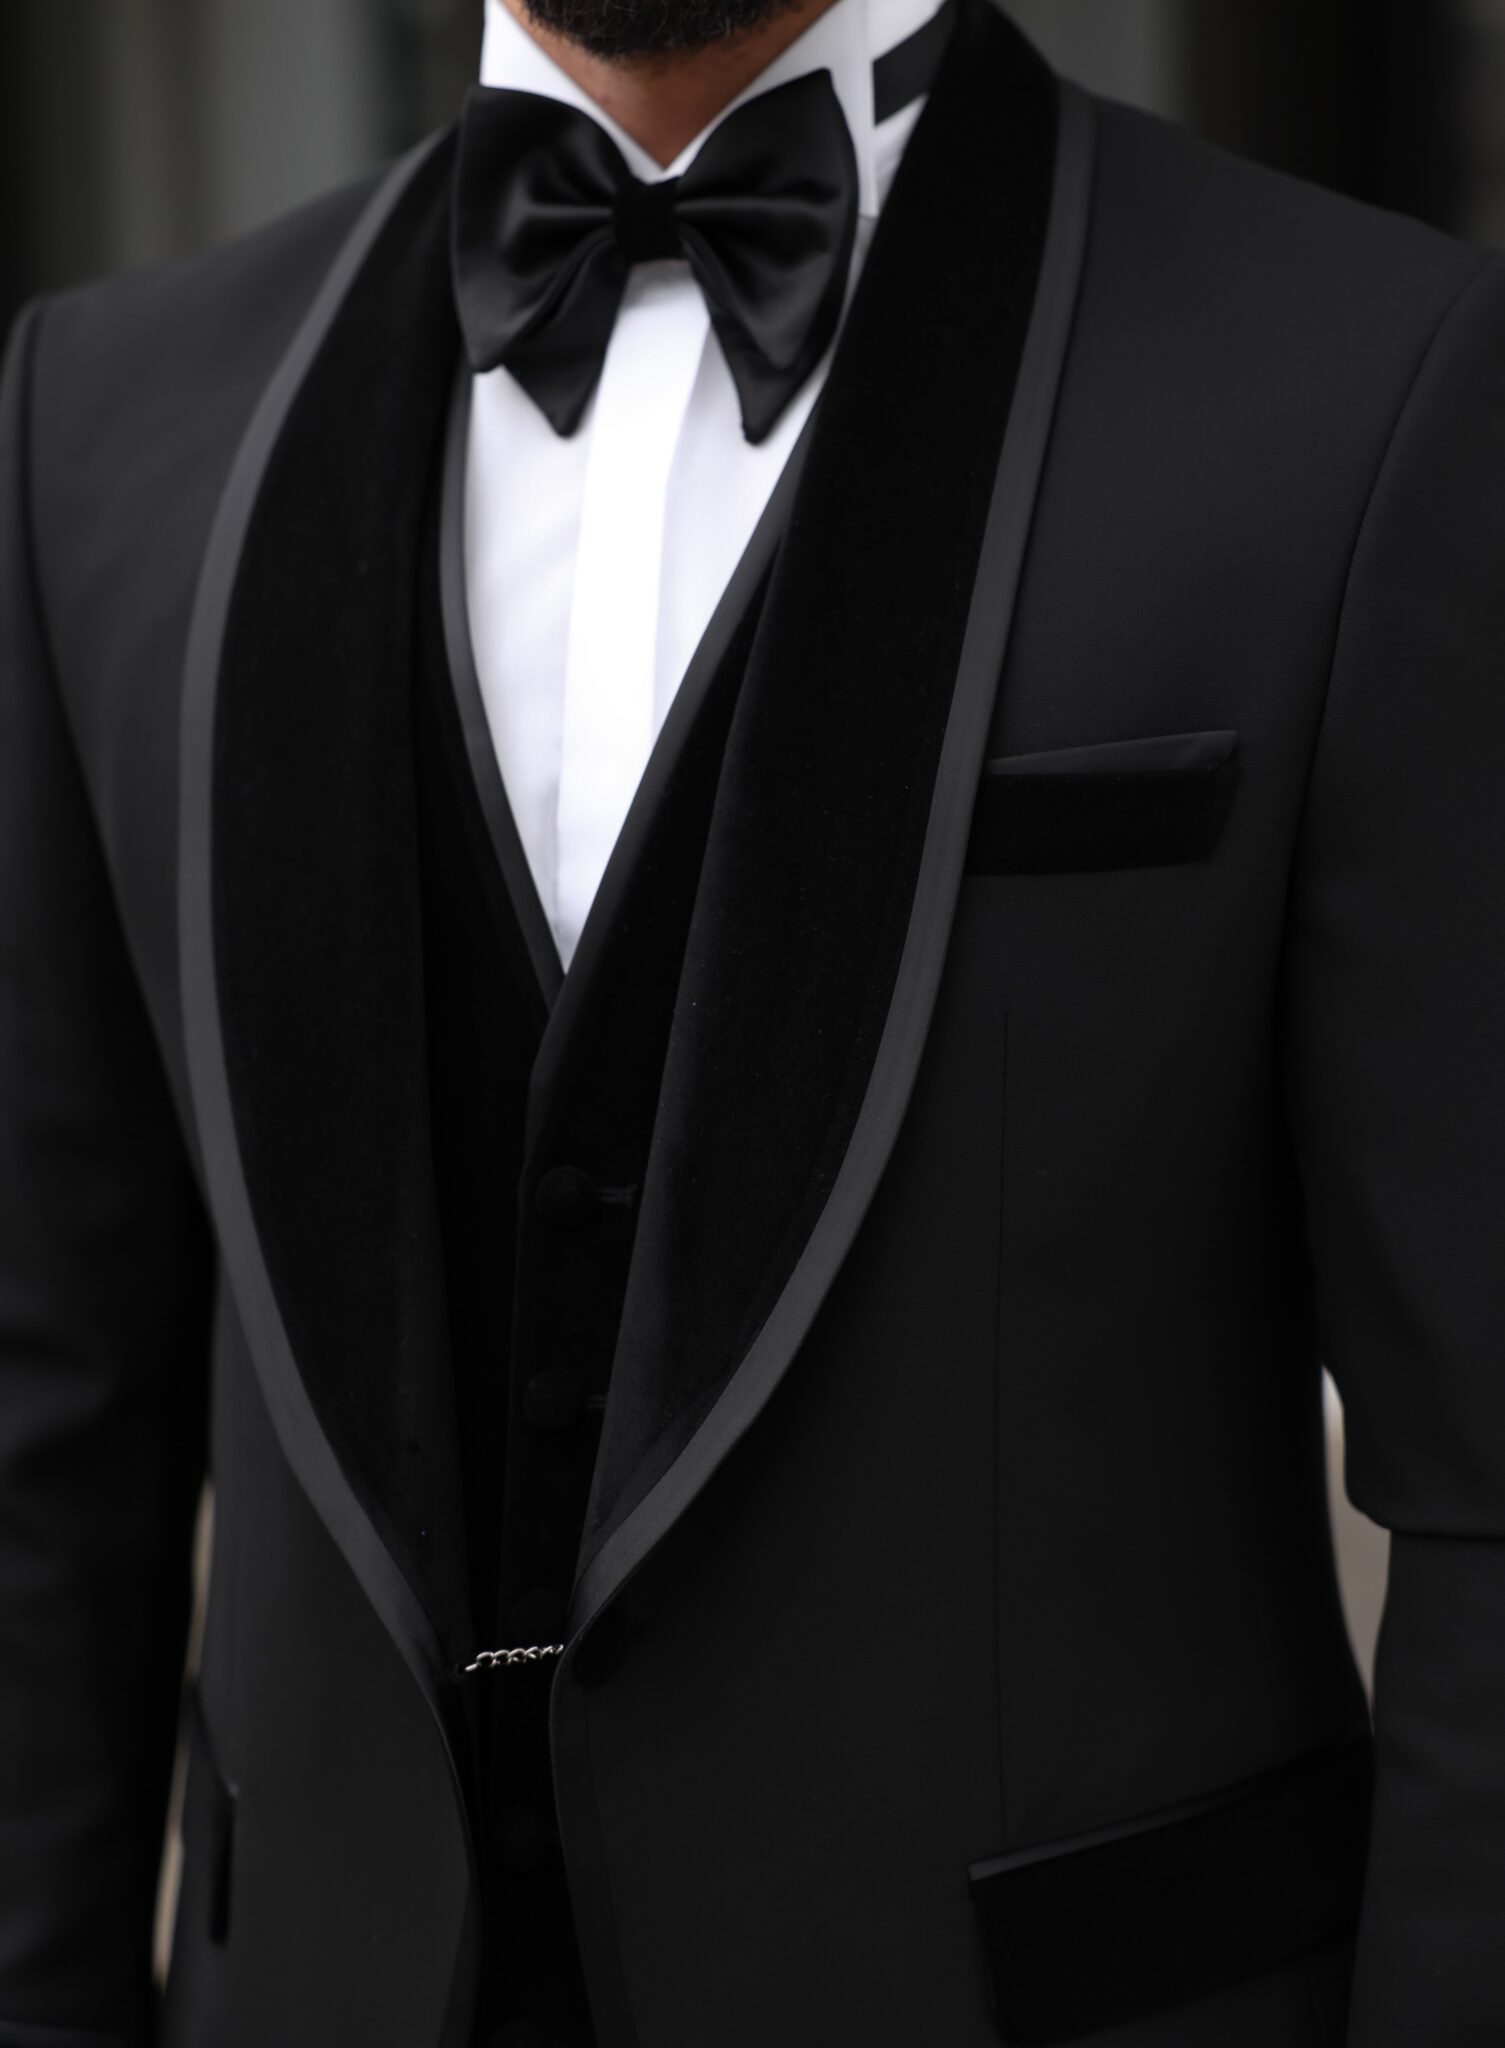 Churchill Slim Fit All Black Three Piece Men’s Tuxedo Suit With Peak ...